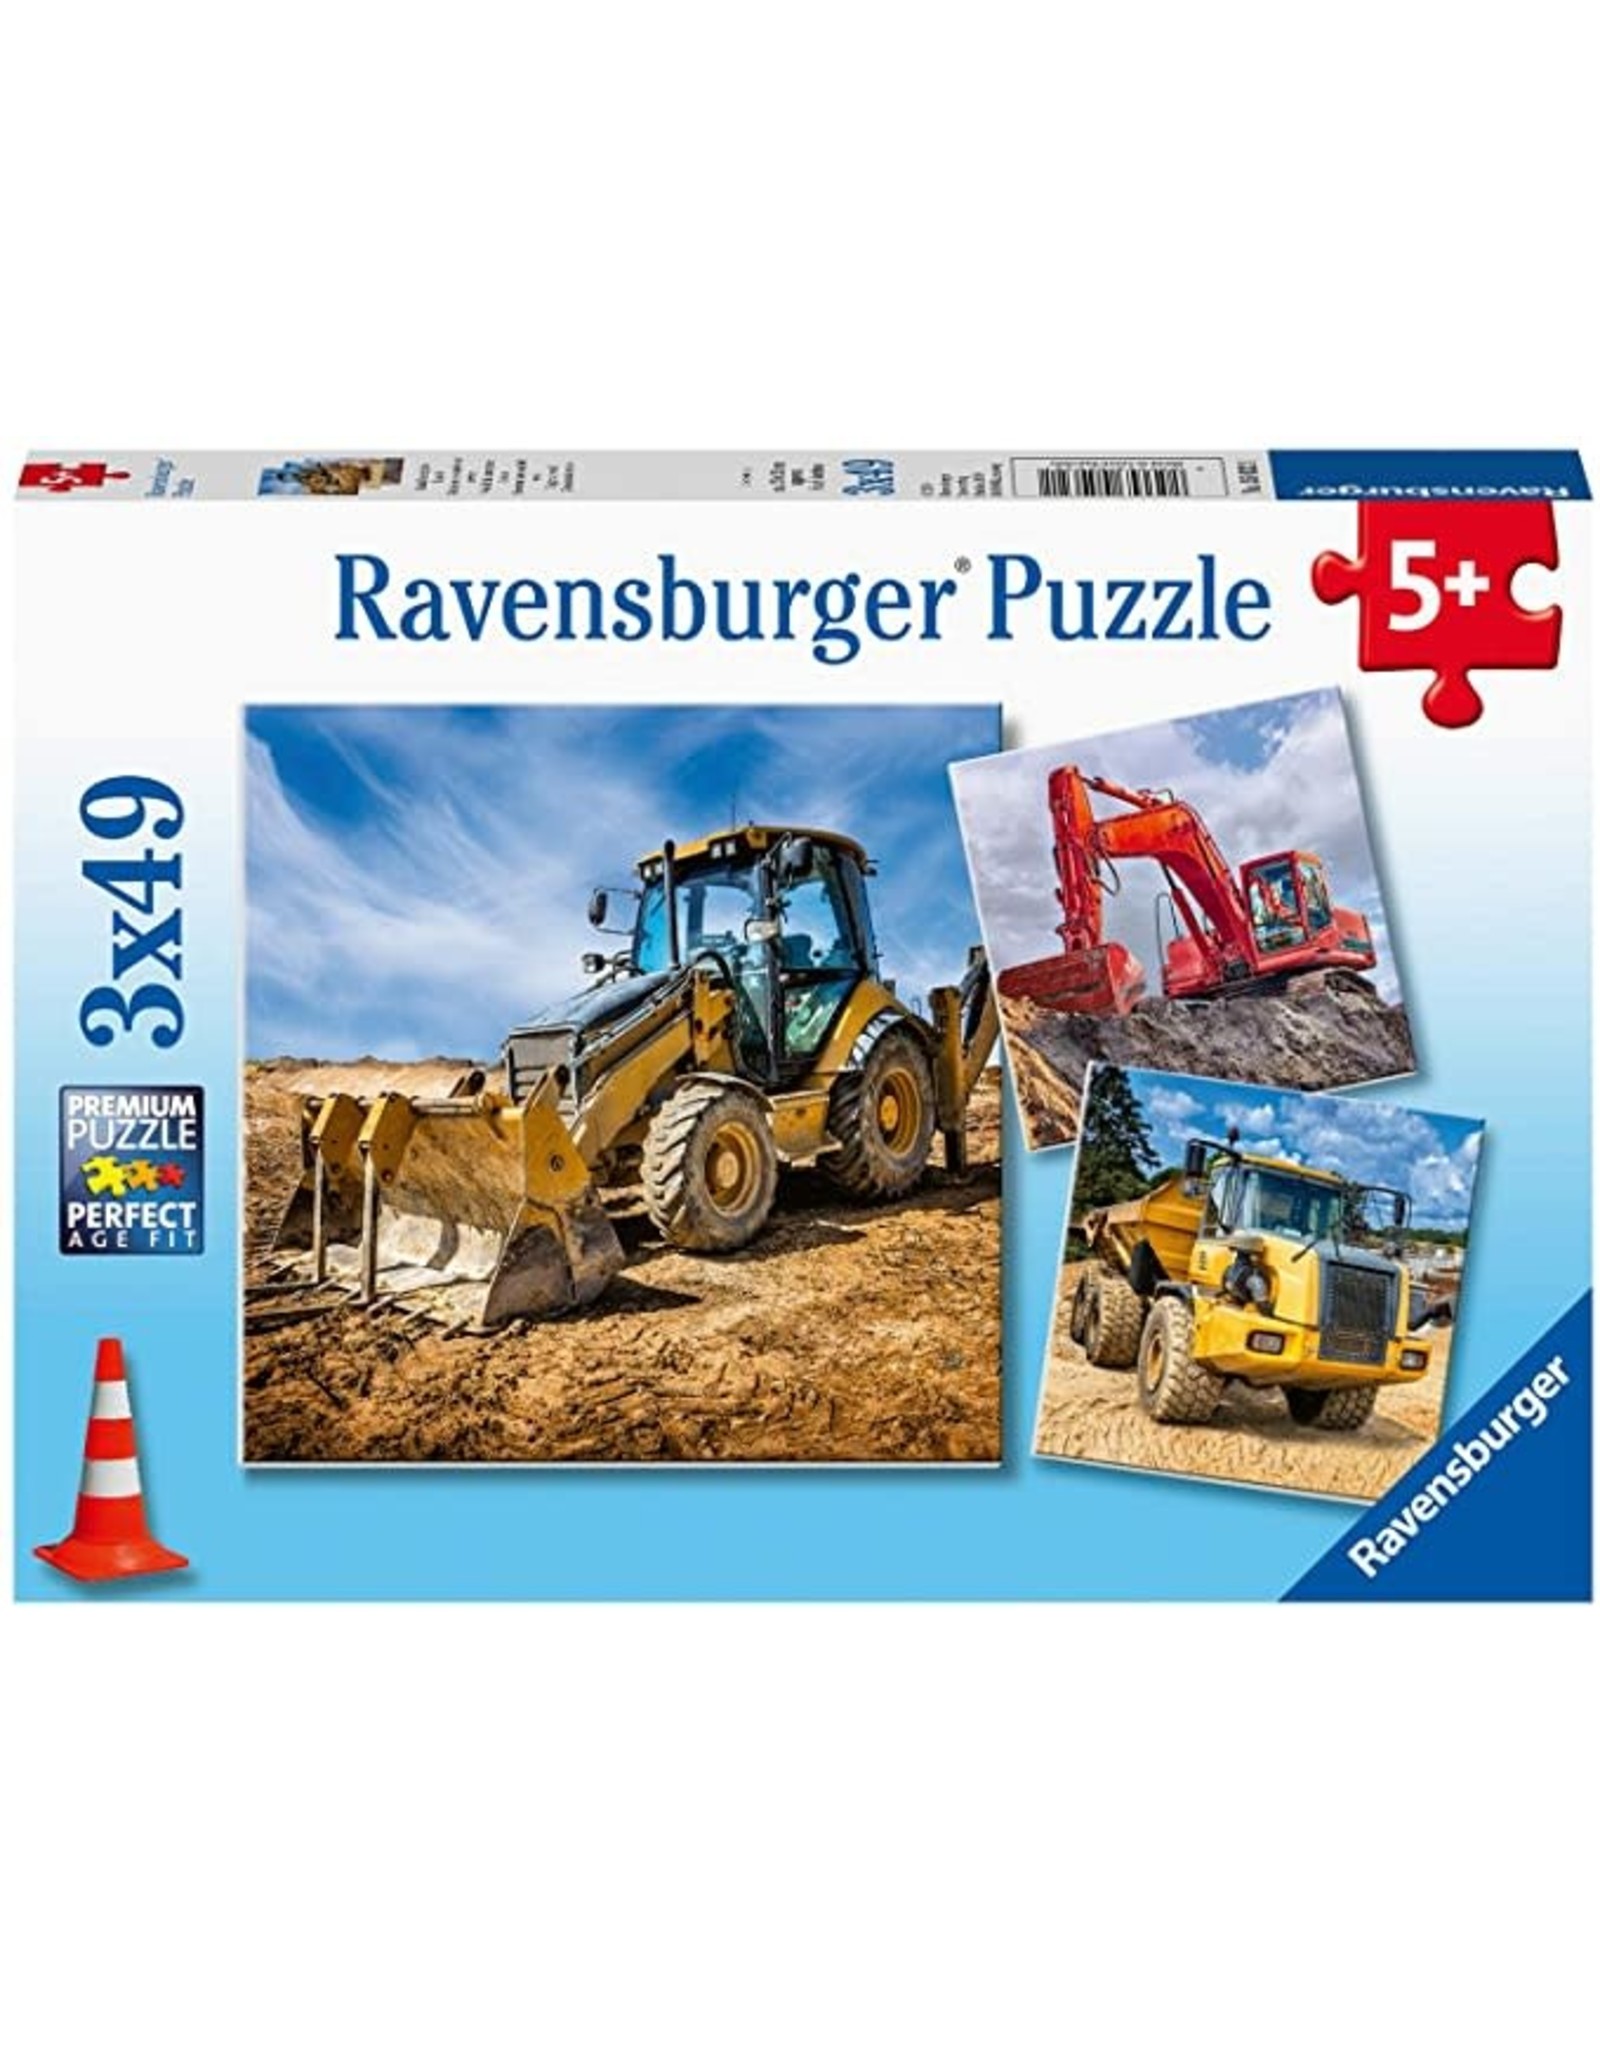 Ravensburger Diggers At Work! 3x49 pc